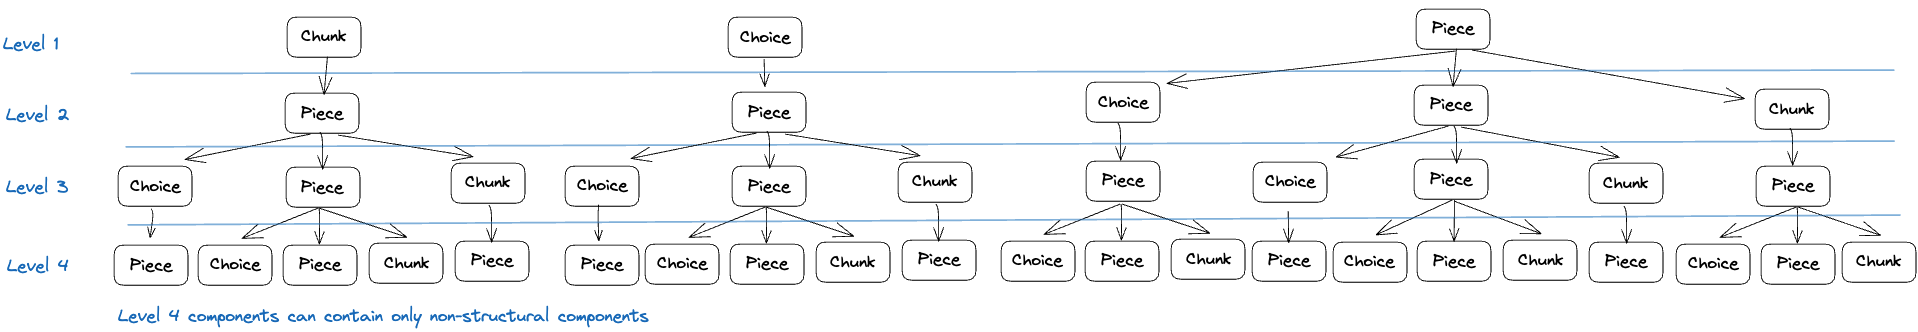 Choice nesting diagram